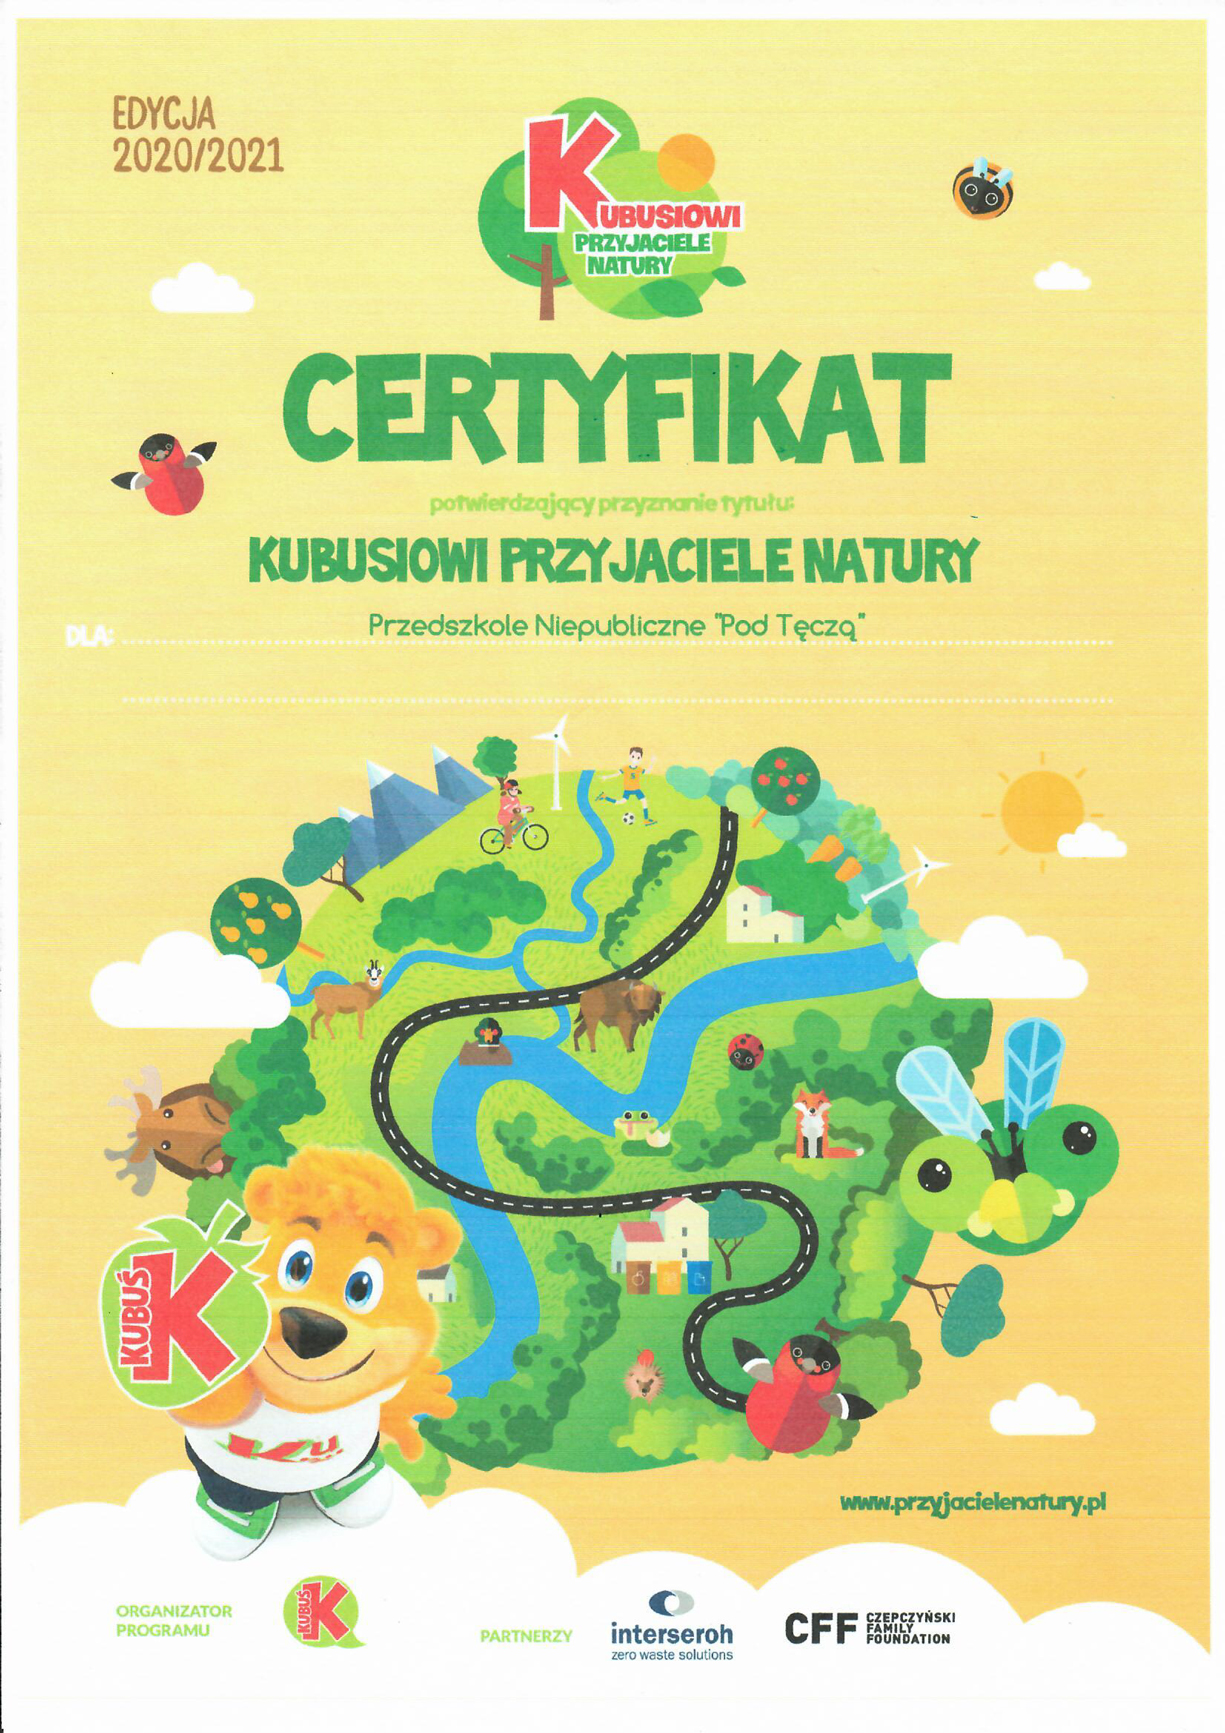 Certyfikat 2021 Kubusiowi Przyjaciele Natury - skan